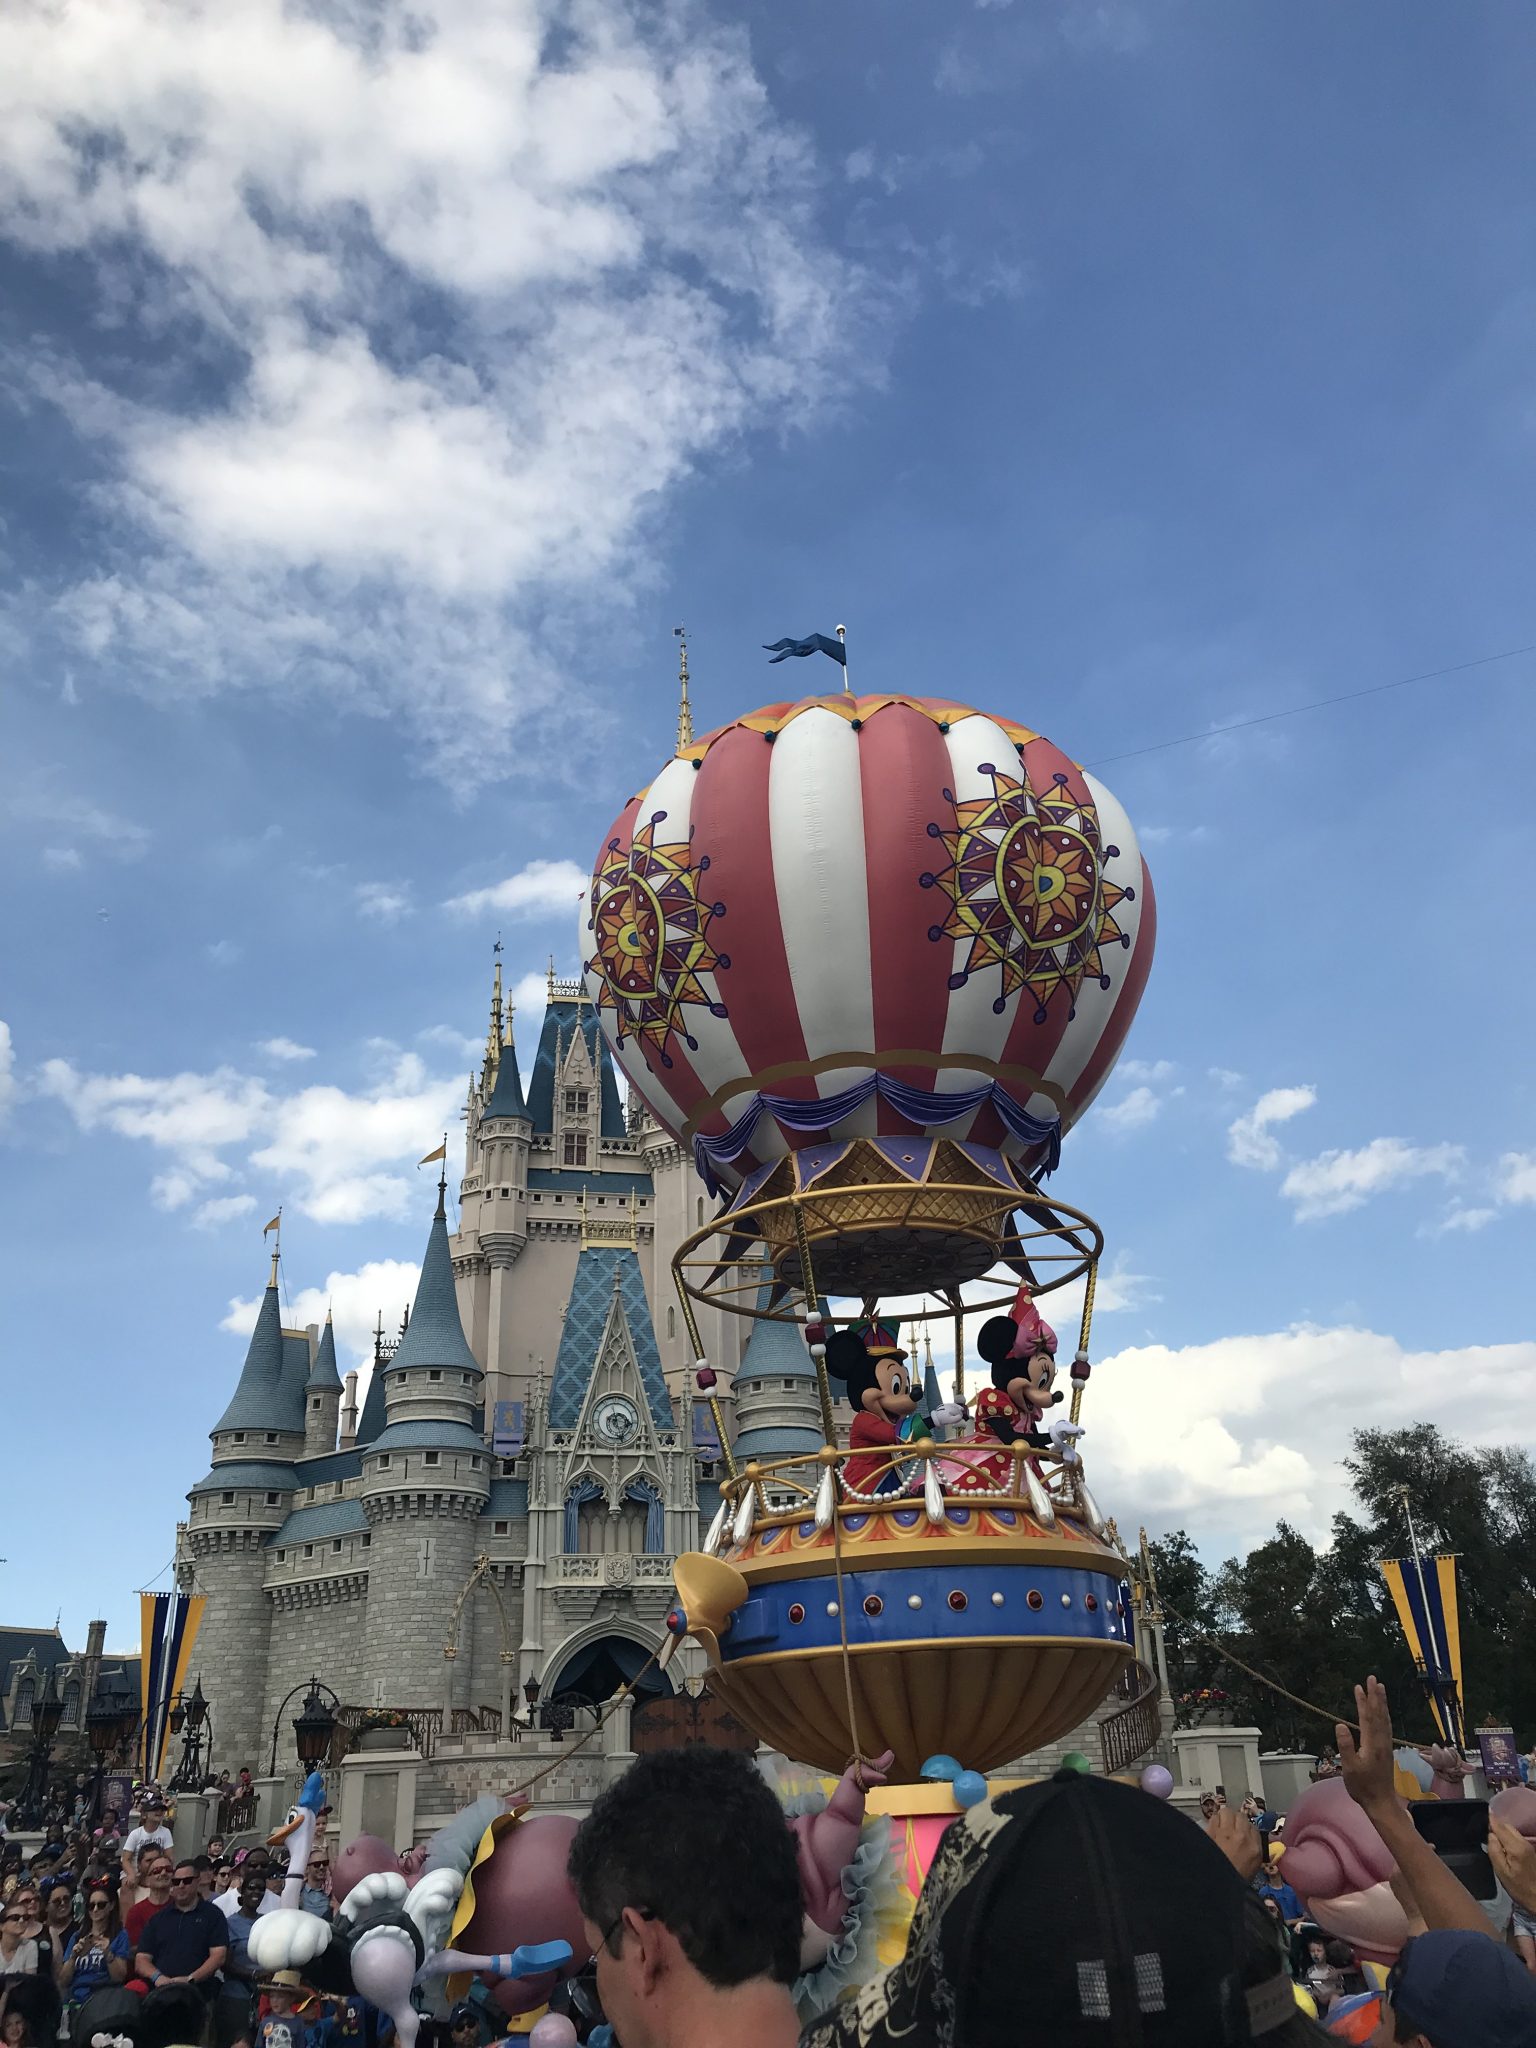 Mickey e Minnie no Balão no Disney Festival of Fantasy Parade. Foto: Divulgação/Fernanda De Rosa